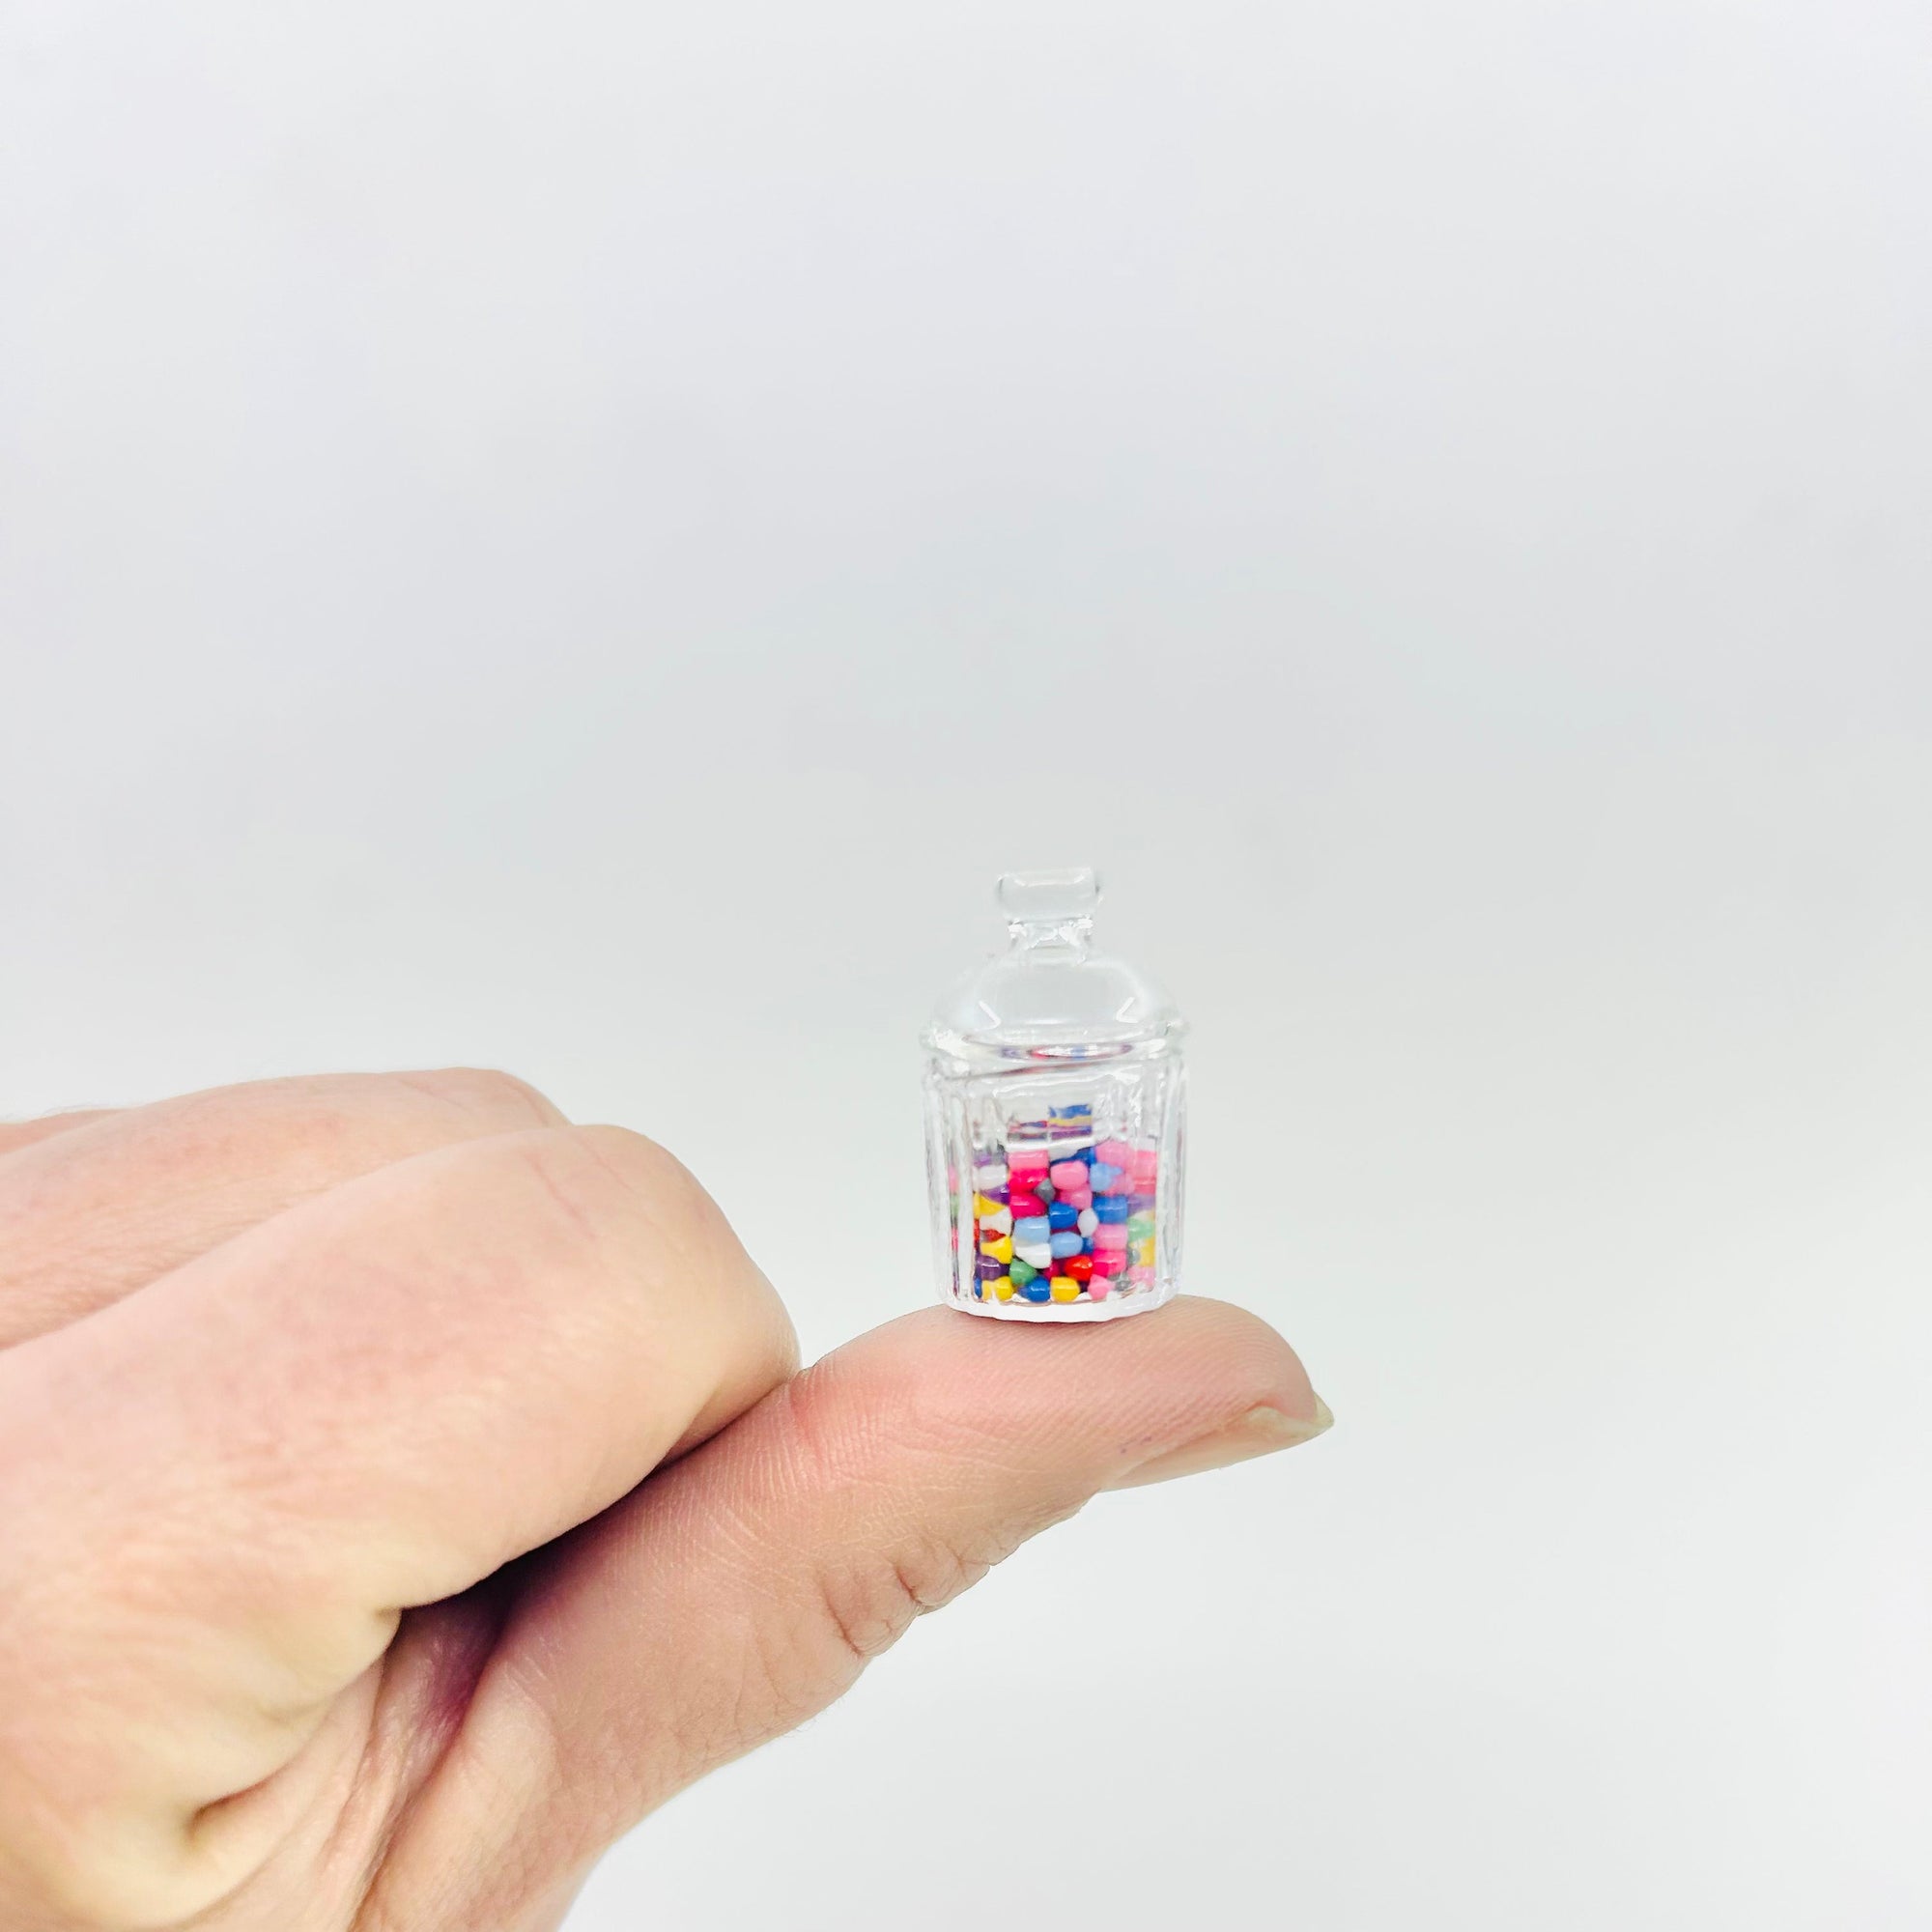 Tiniest Glass Jellybean Jar Miniature - 